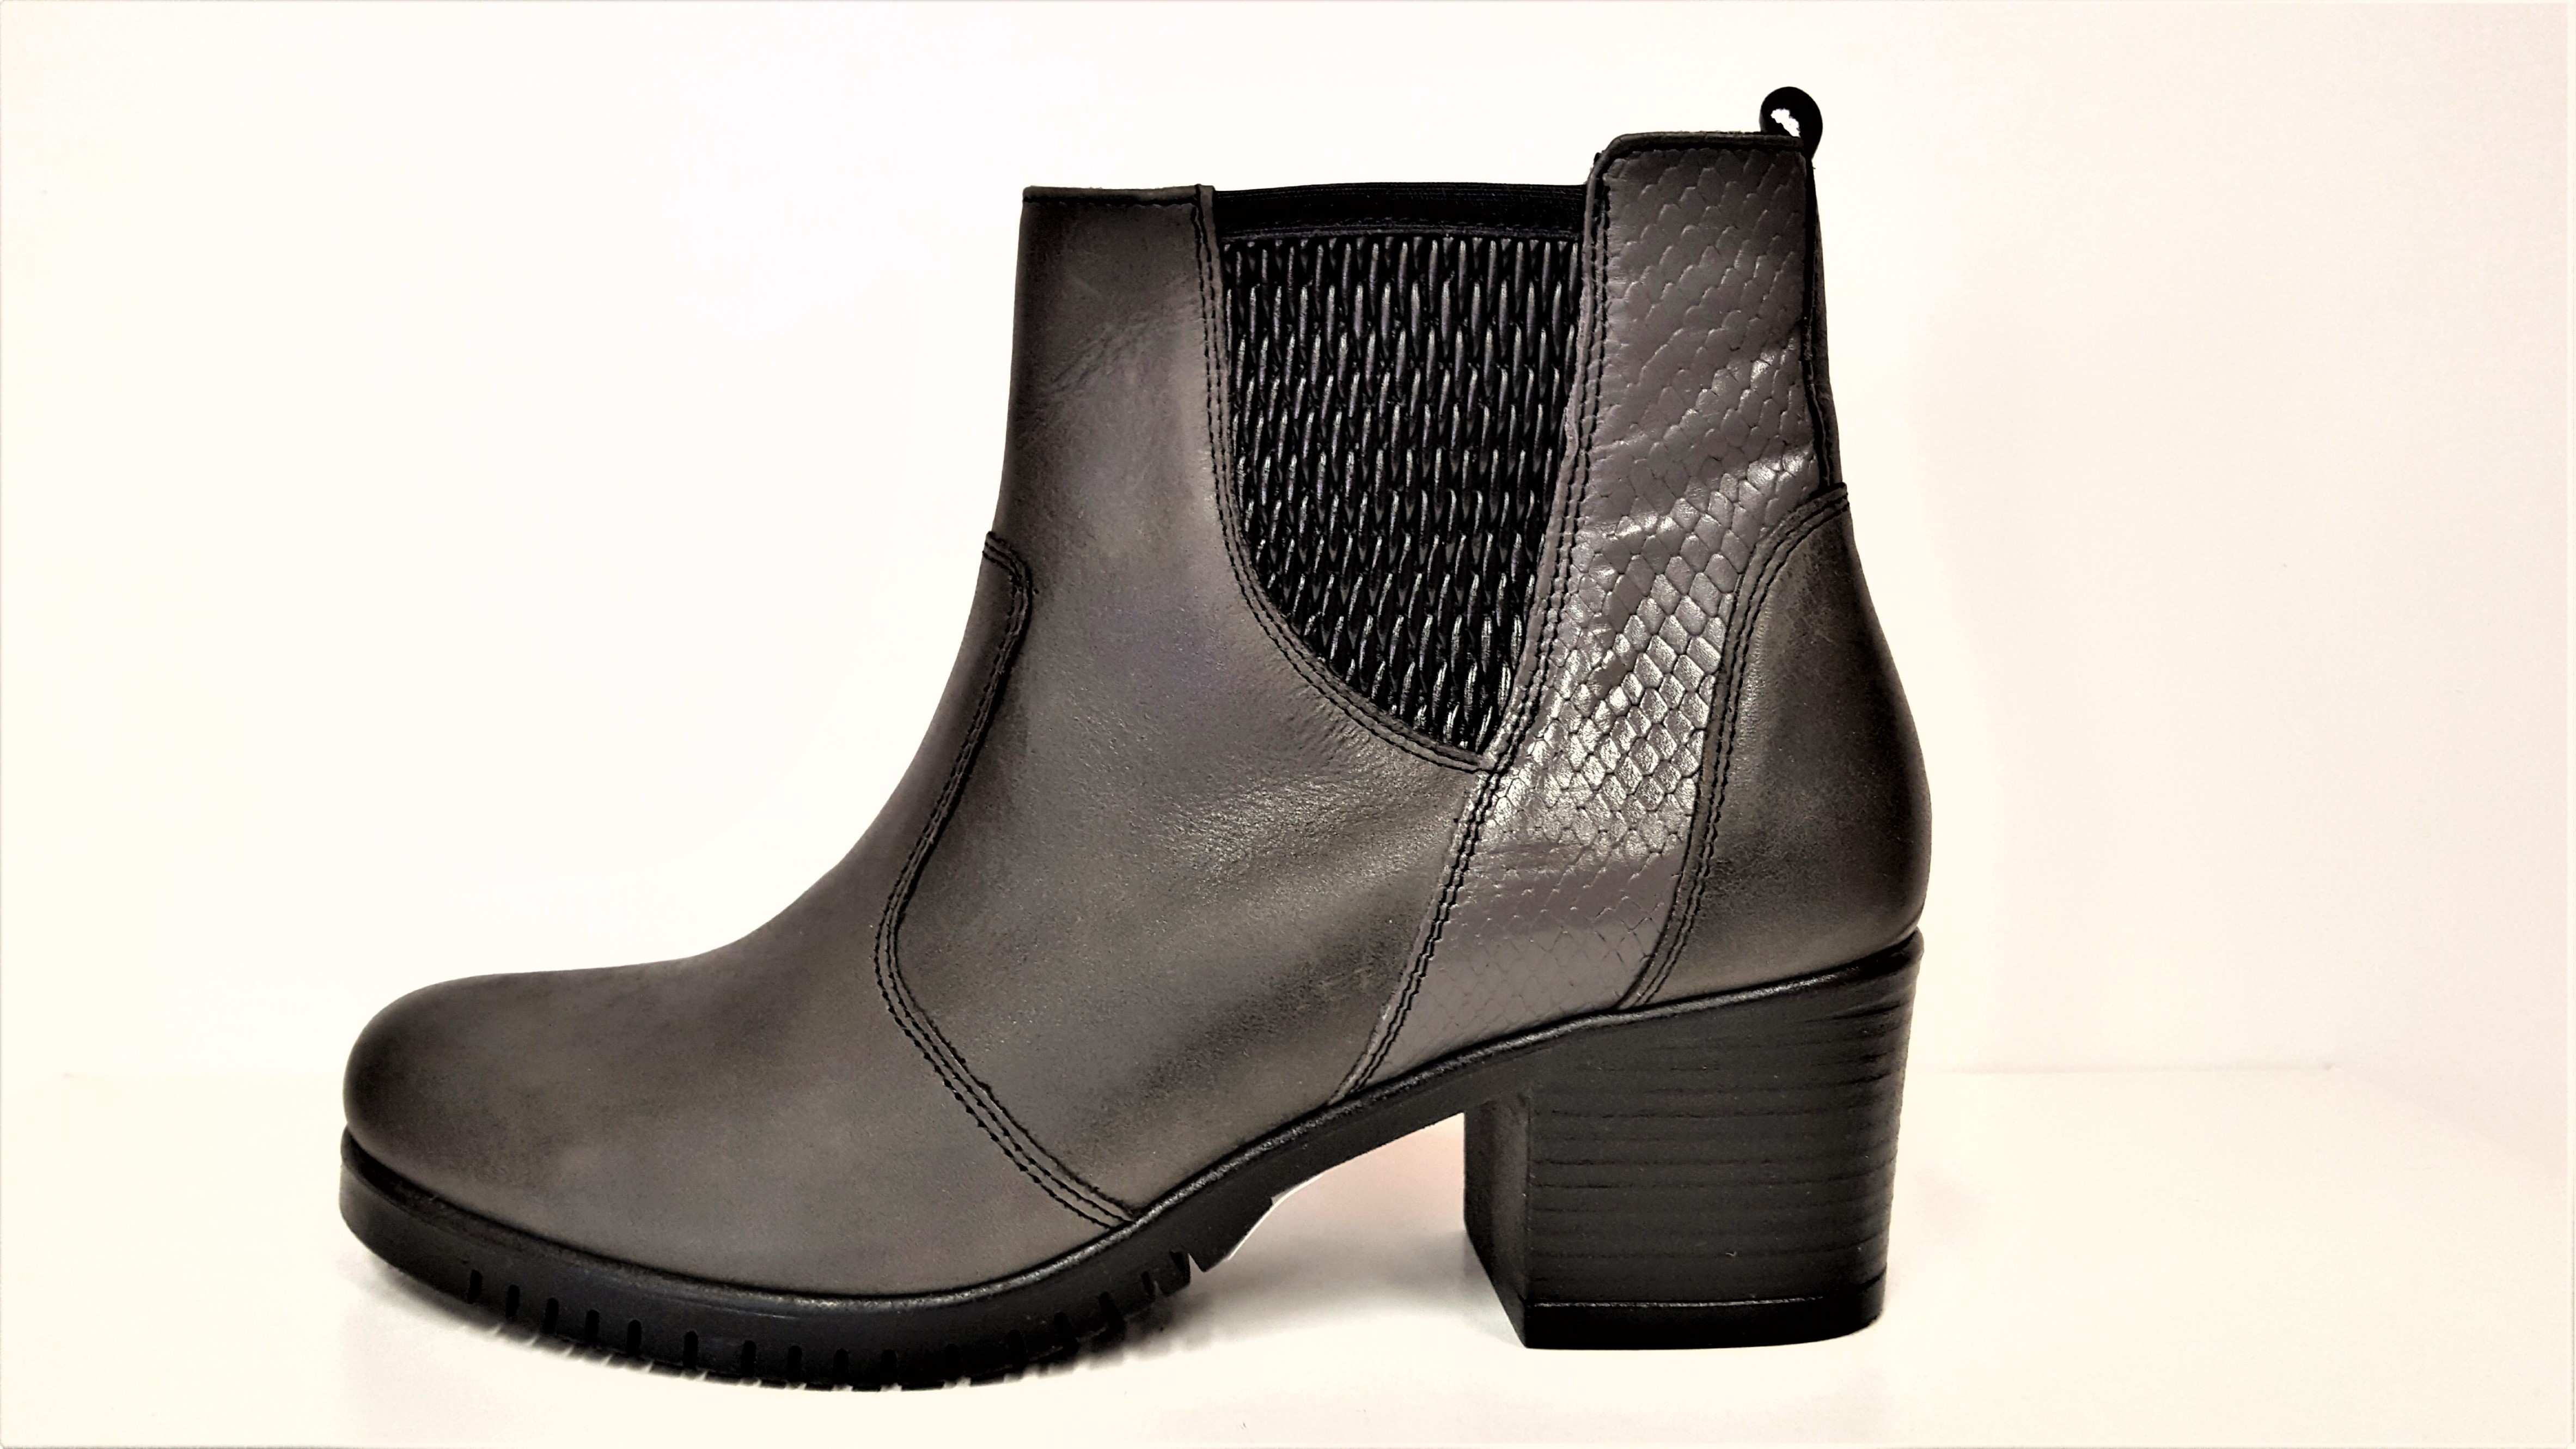 VARIO Kozačky na podpatku - elegantní - Polohovací šedo/černé přizpůsobivé vario kožené kotníkové boty na podpatku se zipem JAMI 23718 Tabulka…